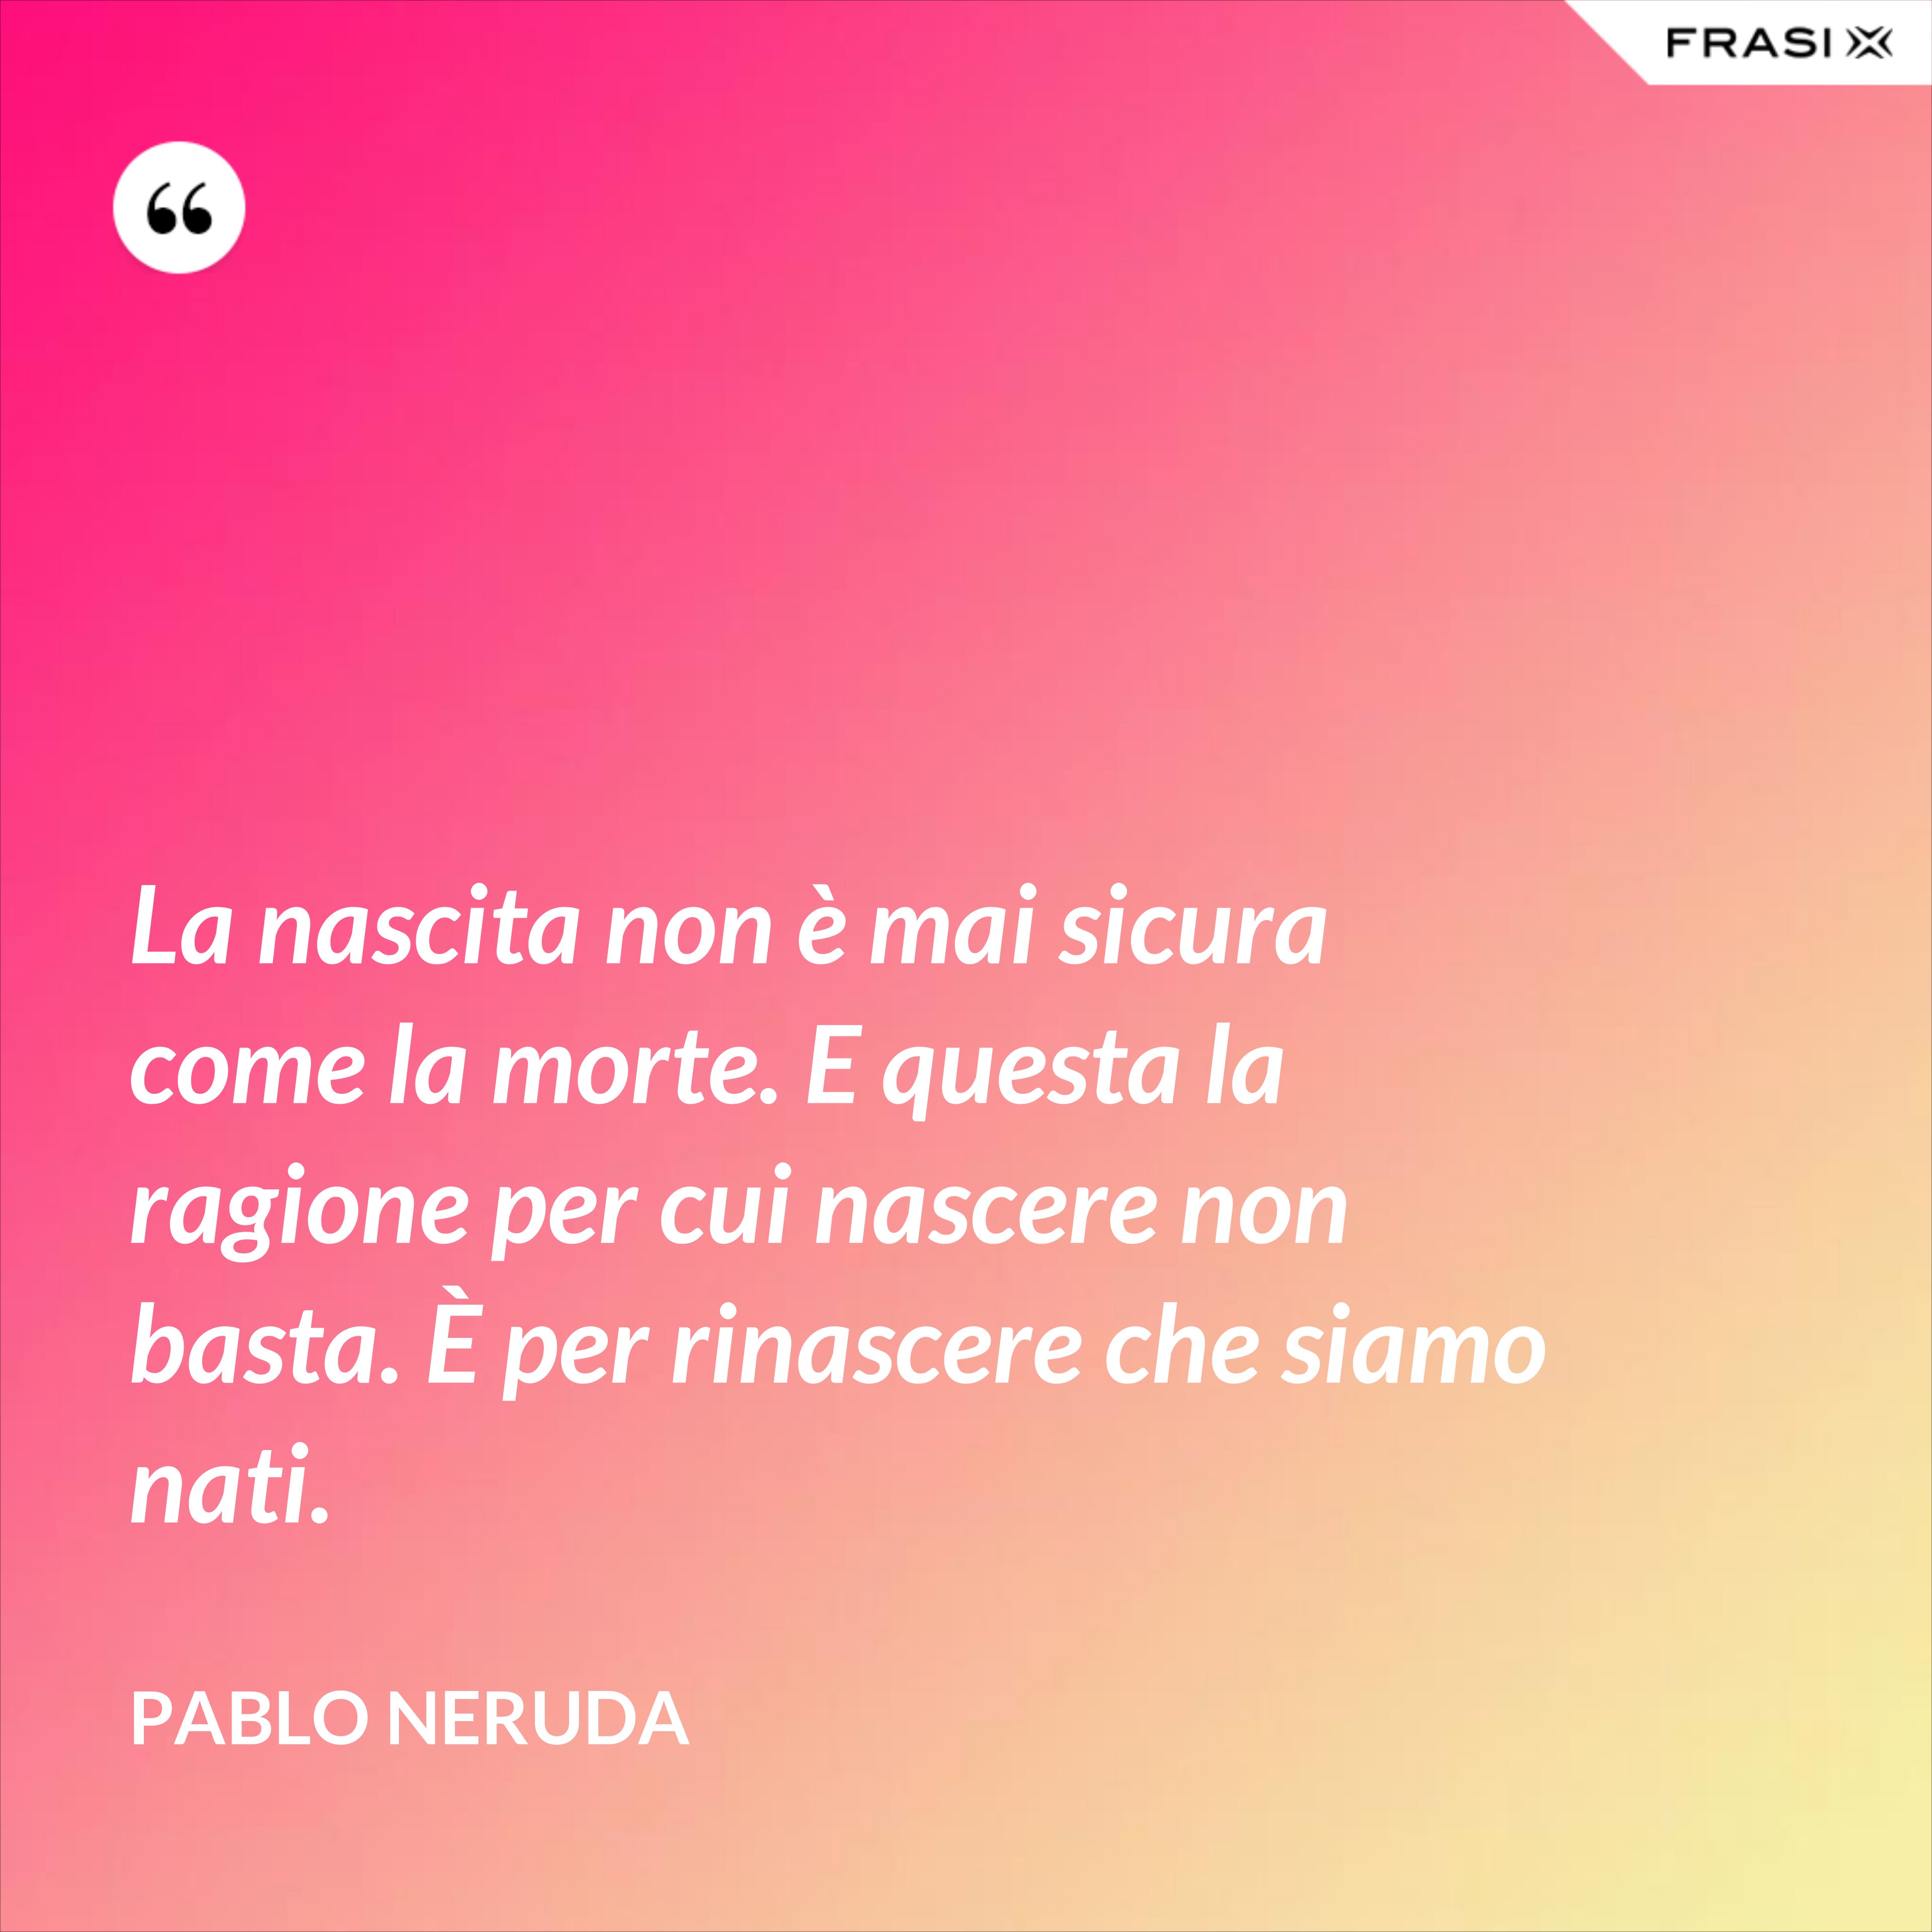 La nascita non è mai sicura come la morte. E questa la ragione per cui nascere non basta. È per rinascere che siamo nati. - Pablo Neruda